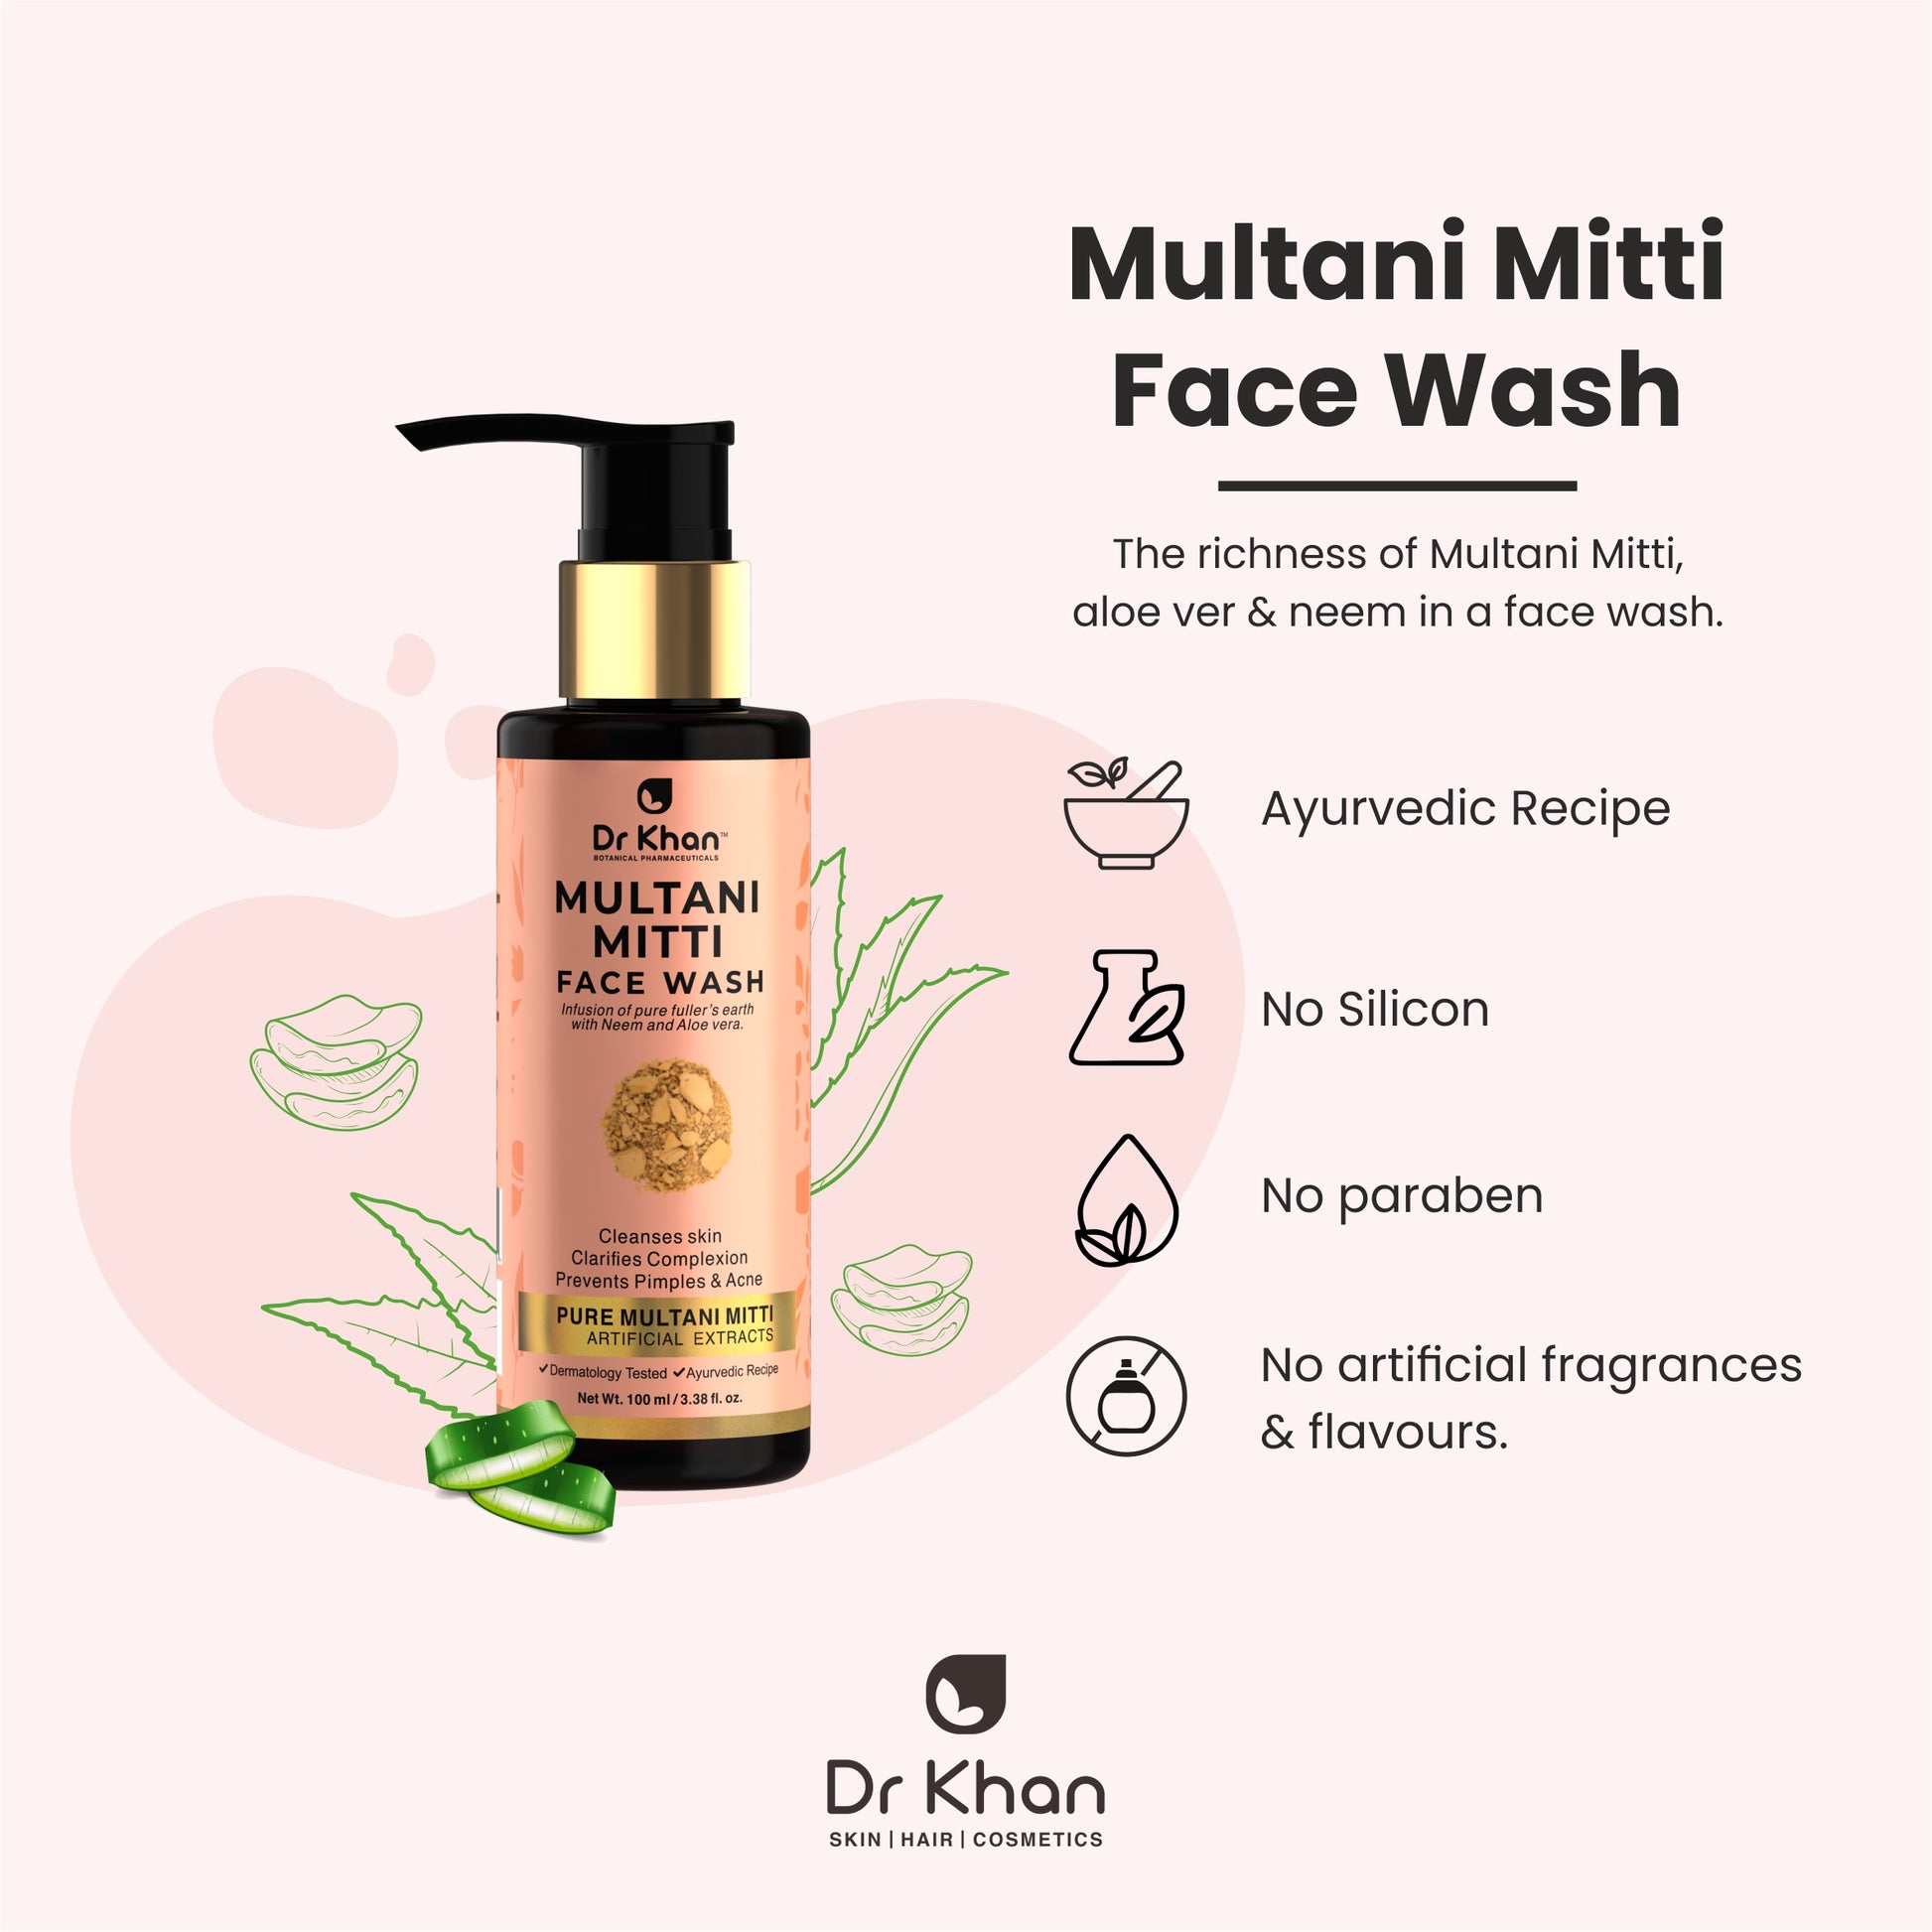 Multani Mitti Face Wash